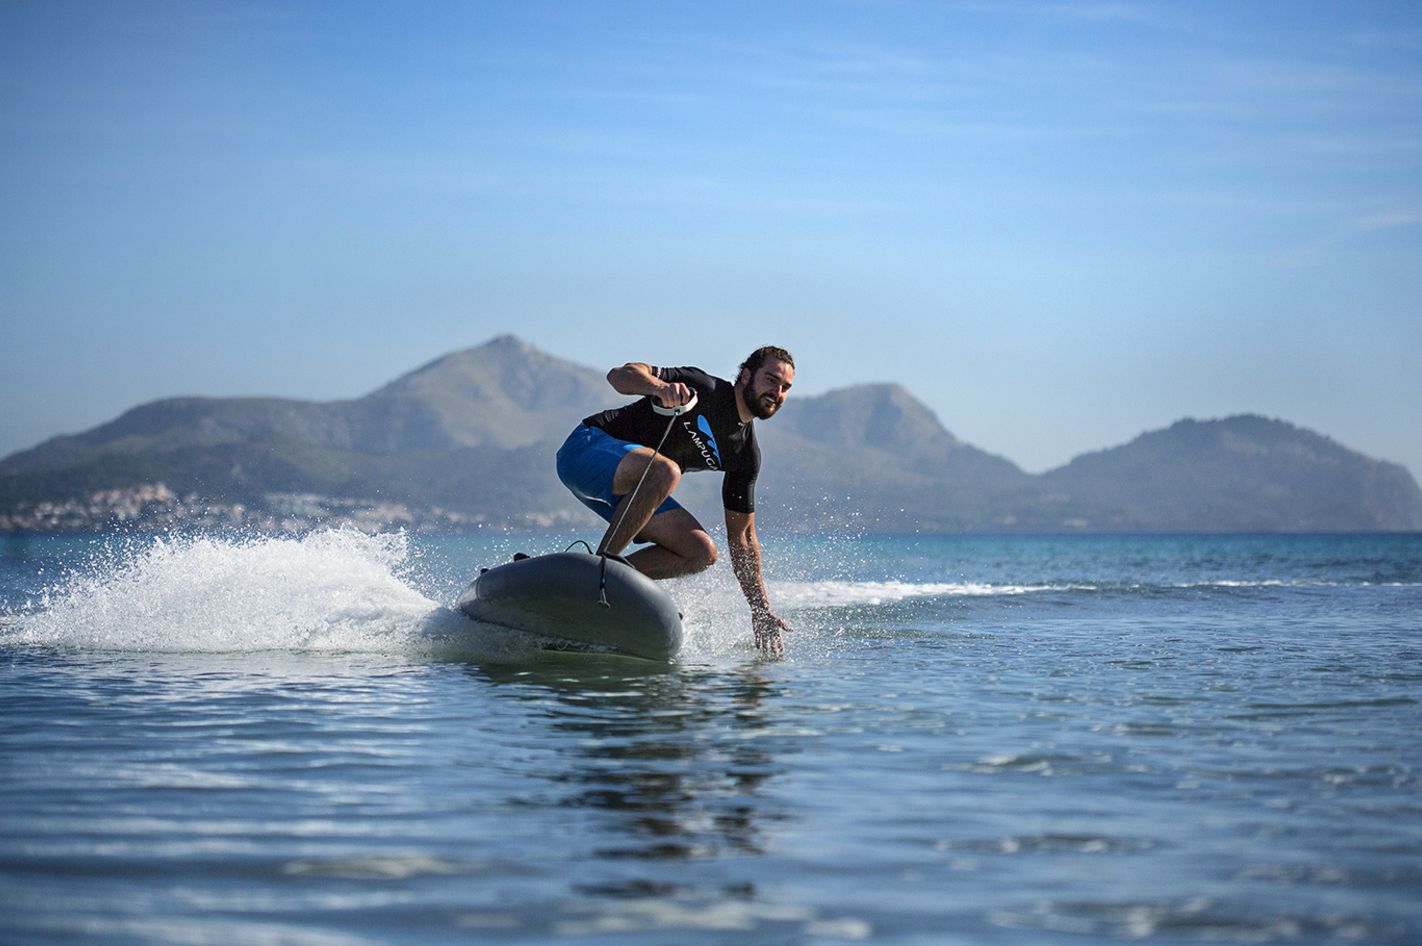 Jetsurf: Surfbrett mit Motor fahren auf Mallorca